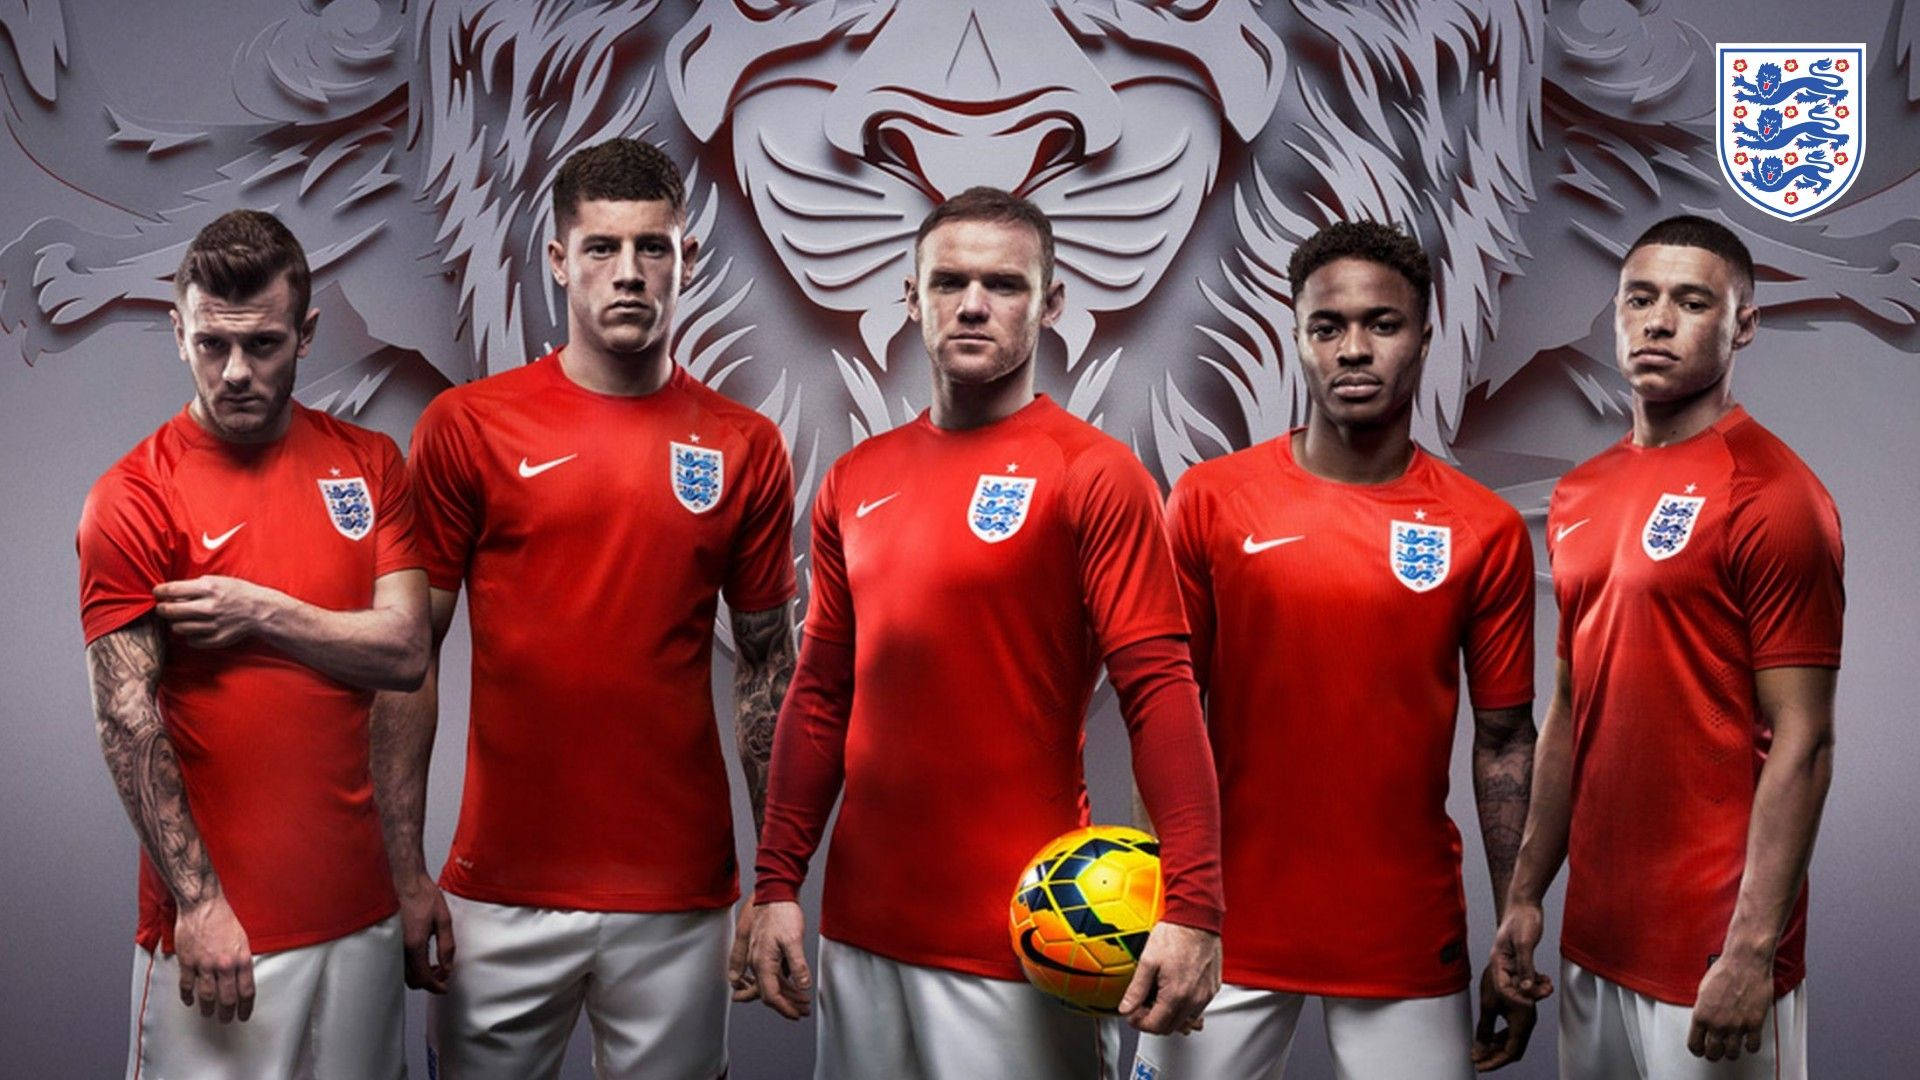 Englandnationalmannschaft Fußball Wm 2014 Wallpaper